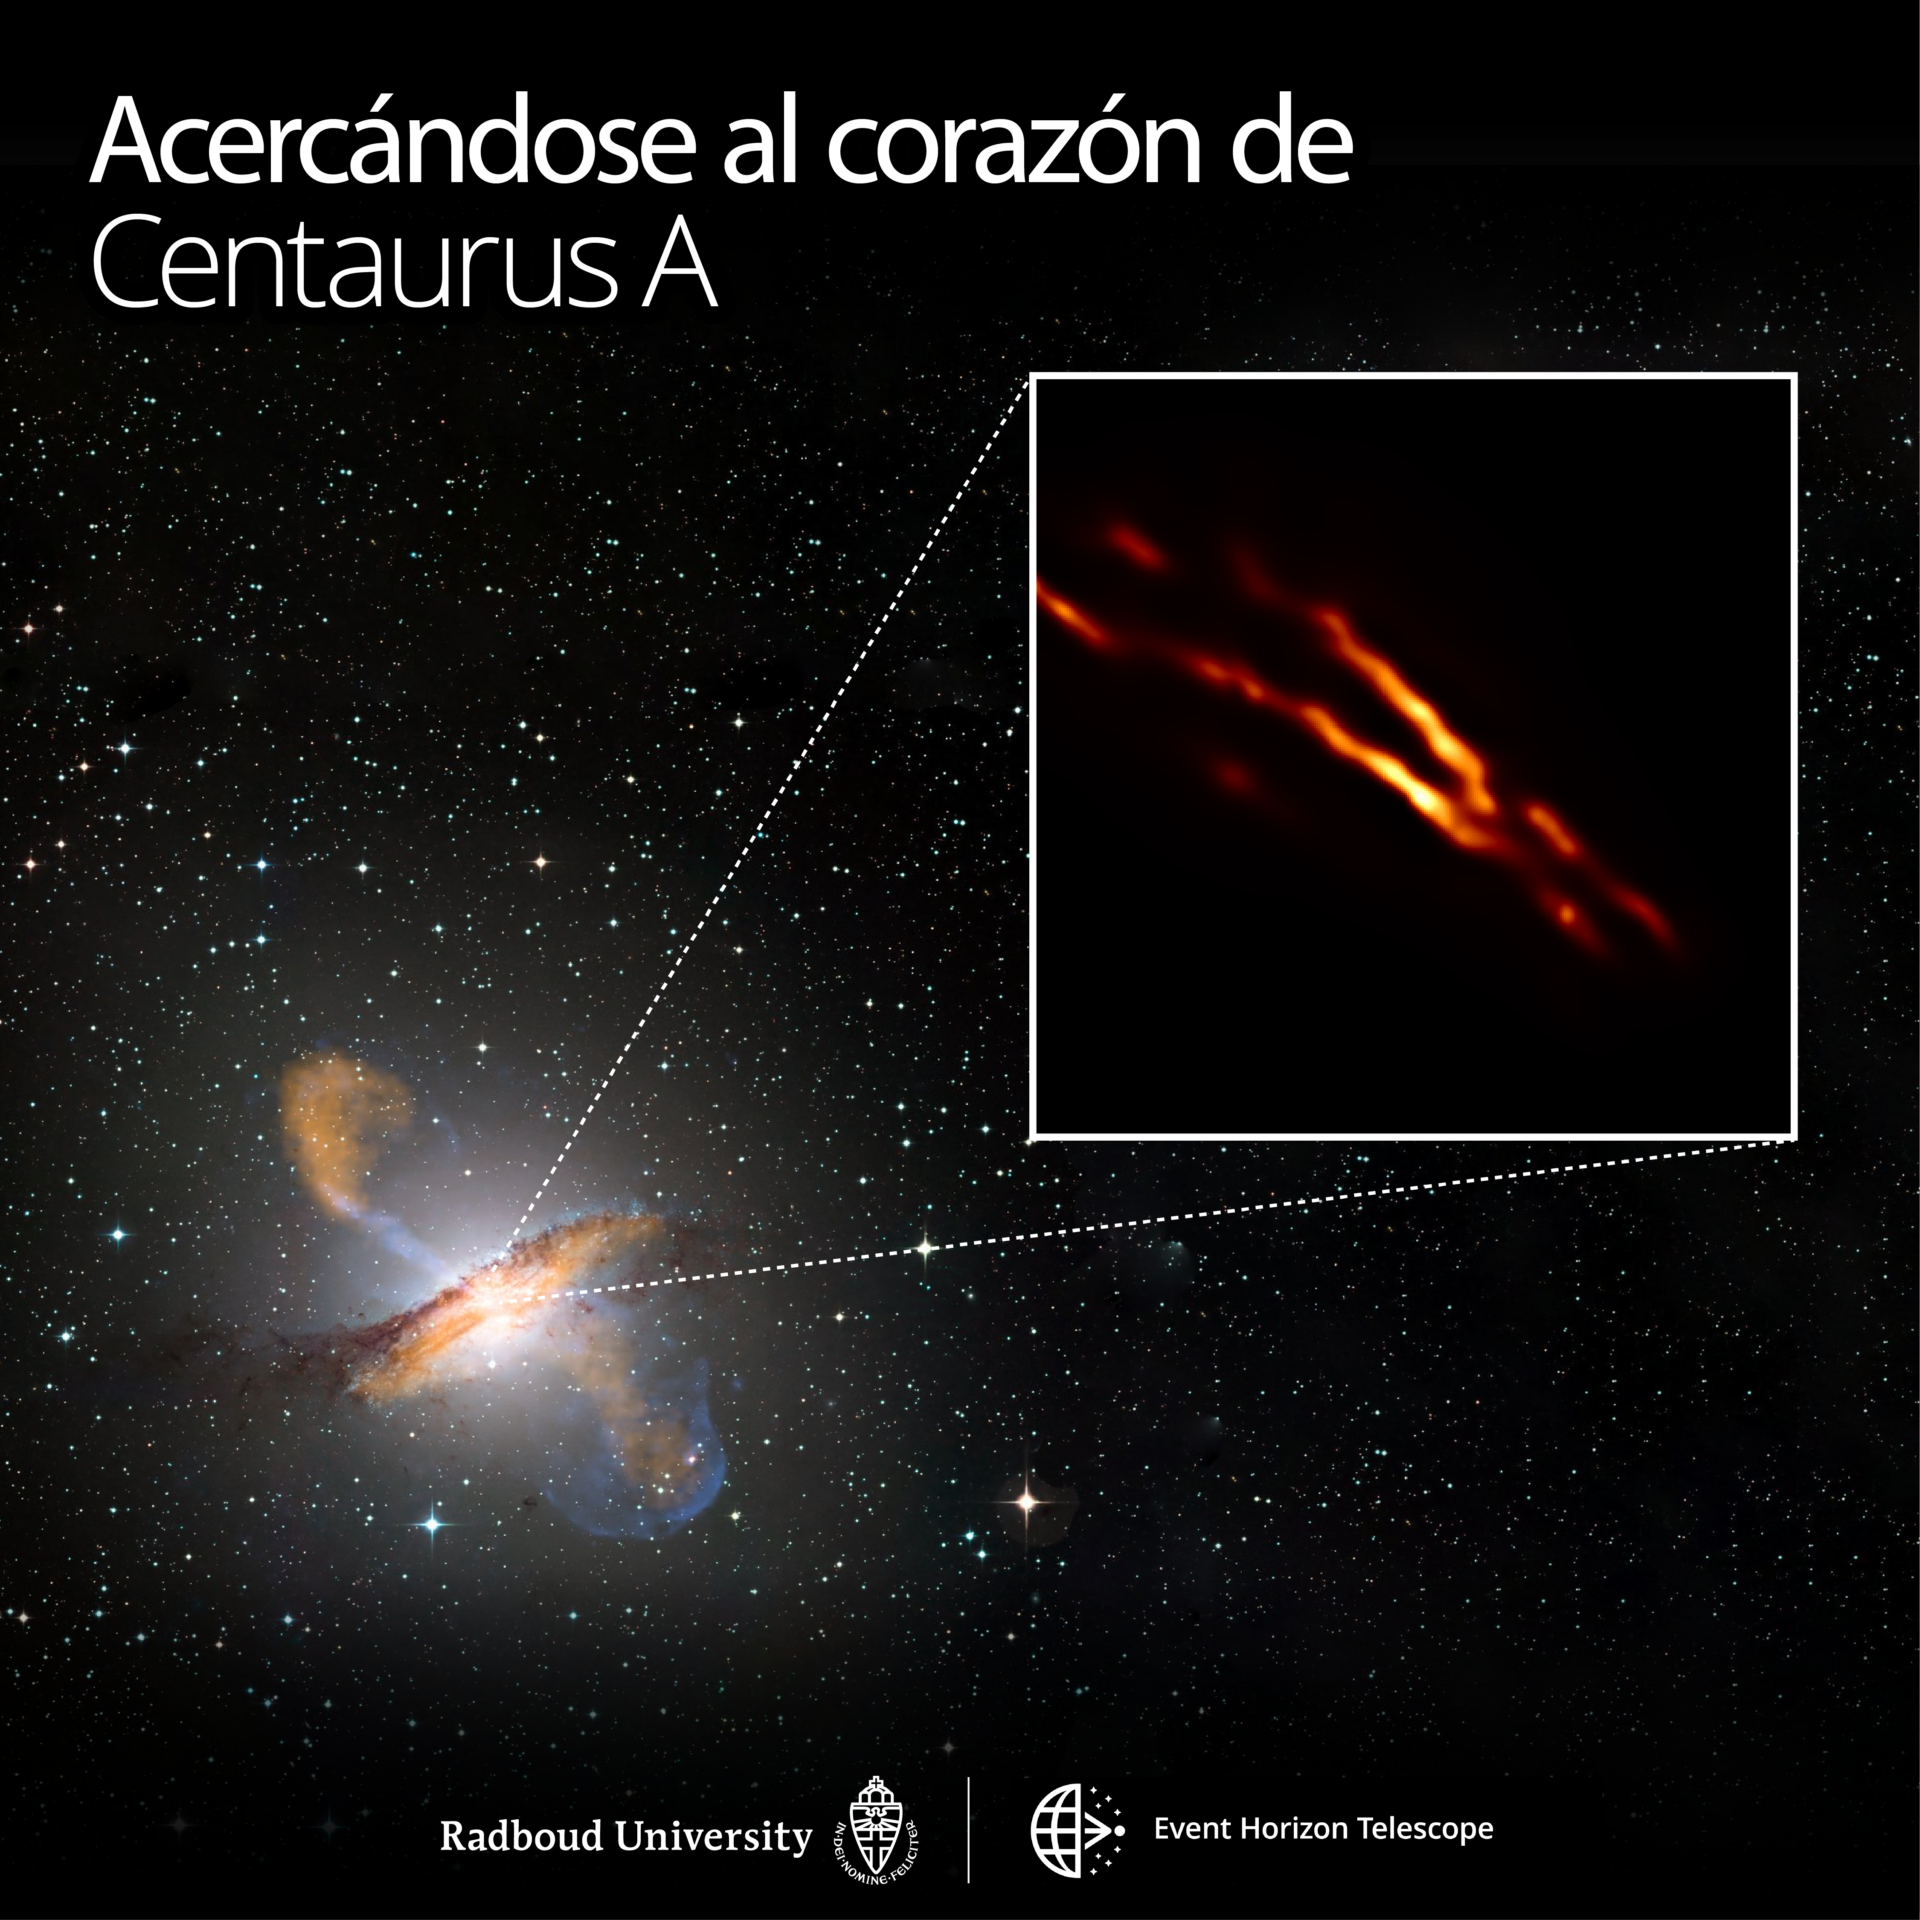 <p>Imagen de mayor resolución de Centaurus A obtenida con el Event Horizon Telescope encima de una imagen de colores compuestos de toda la galaxia. Crédito: Universidad de Radboud; ESO/WFI; MPIfR/ESO/APEX/A. Weiss et al.; NASA/CXC/CfA/R. Kraft y col .; EHT/M. Janssen y col.</p>
